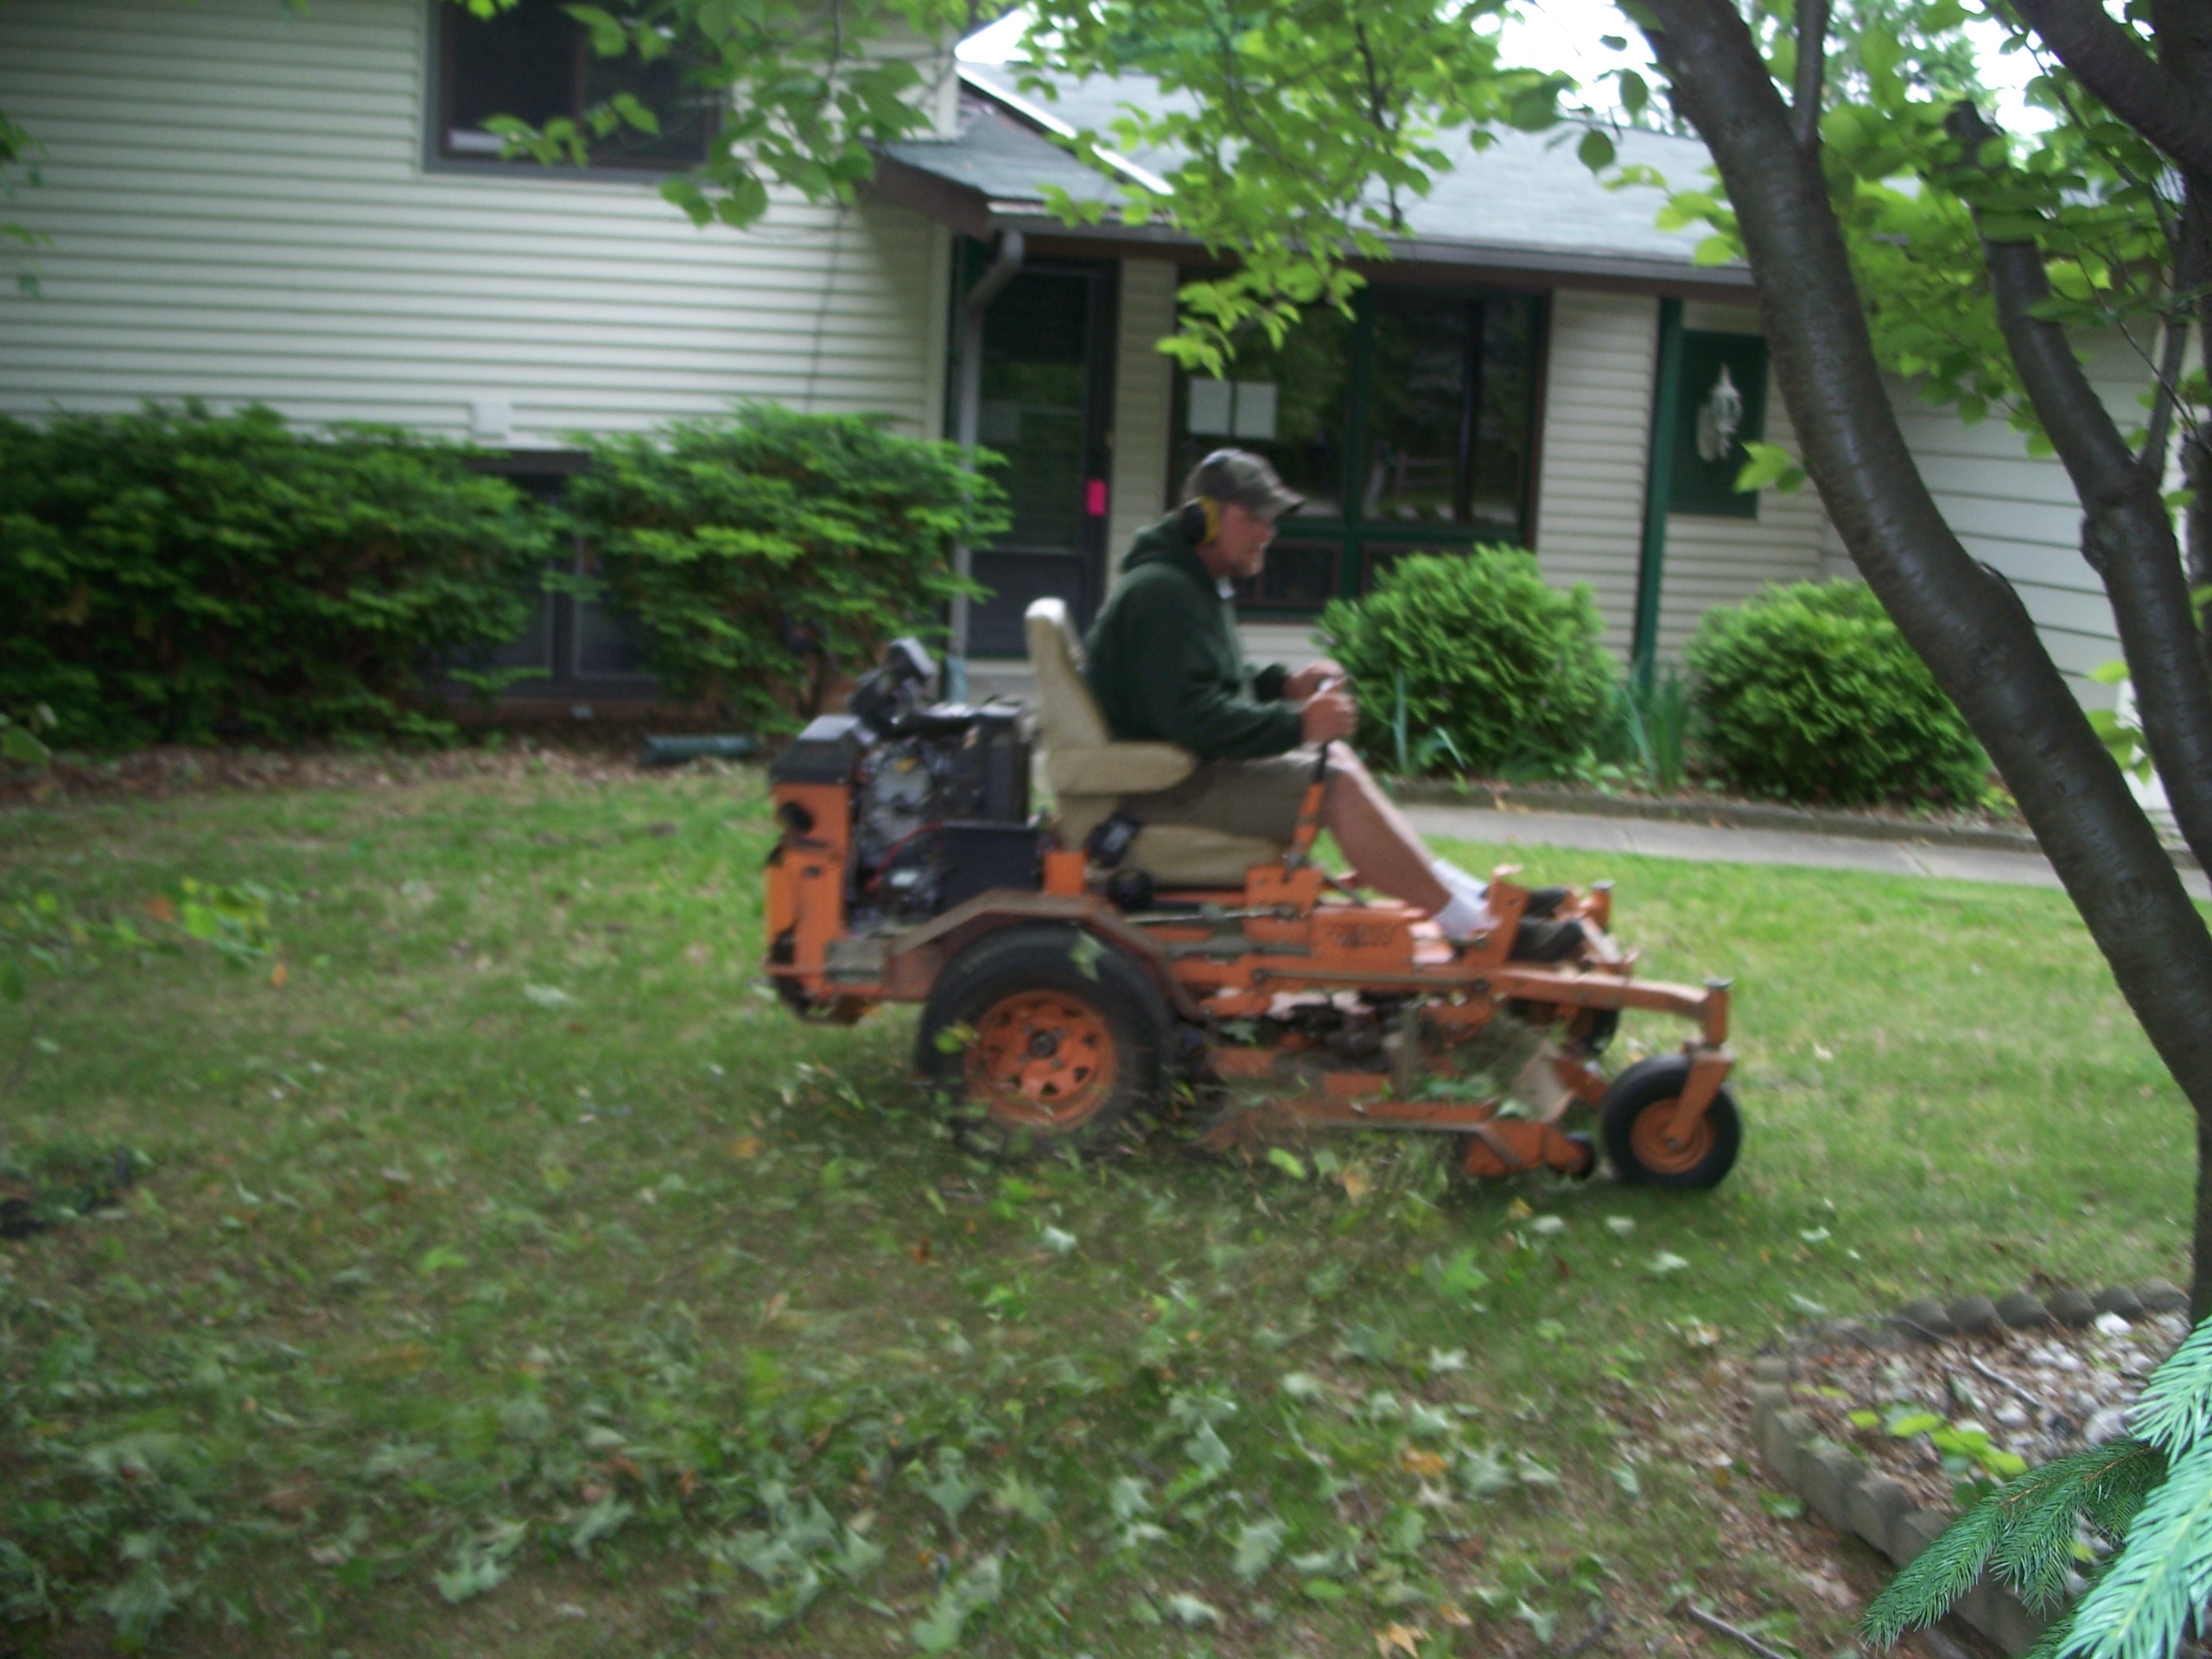 Twin Oaks owner mowing lawns.